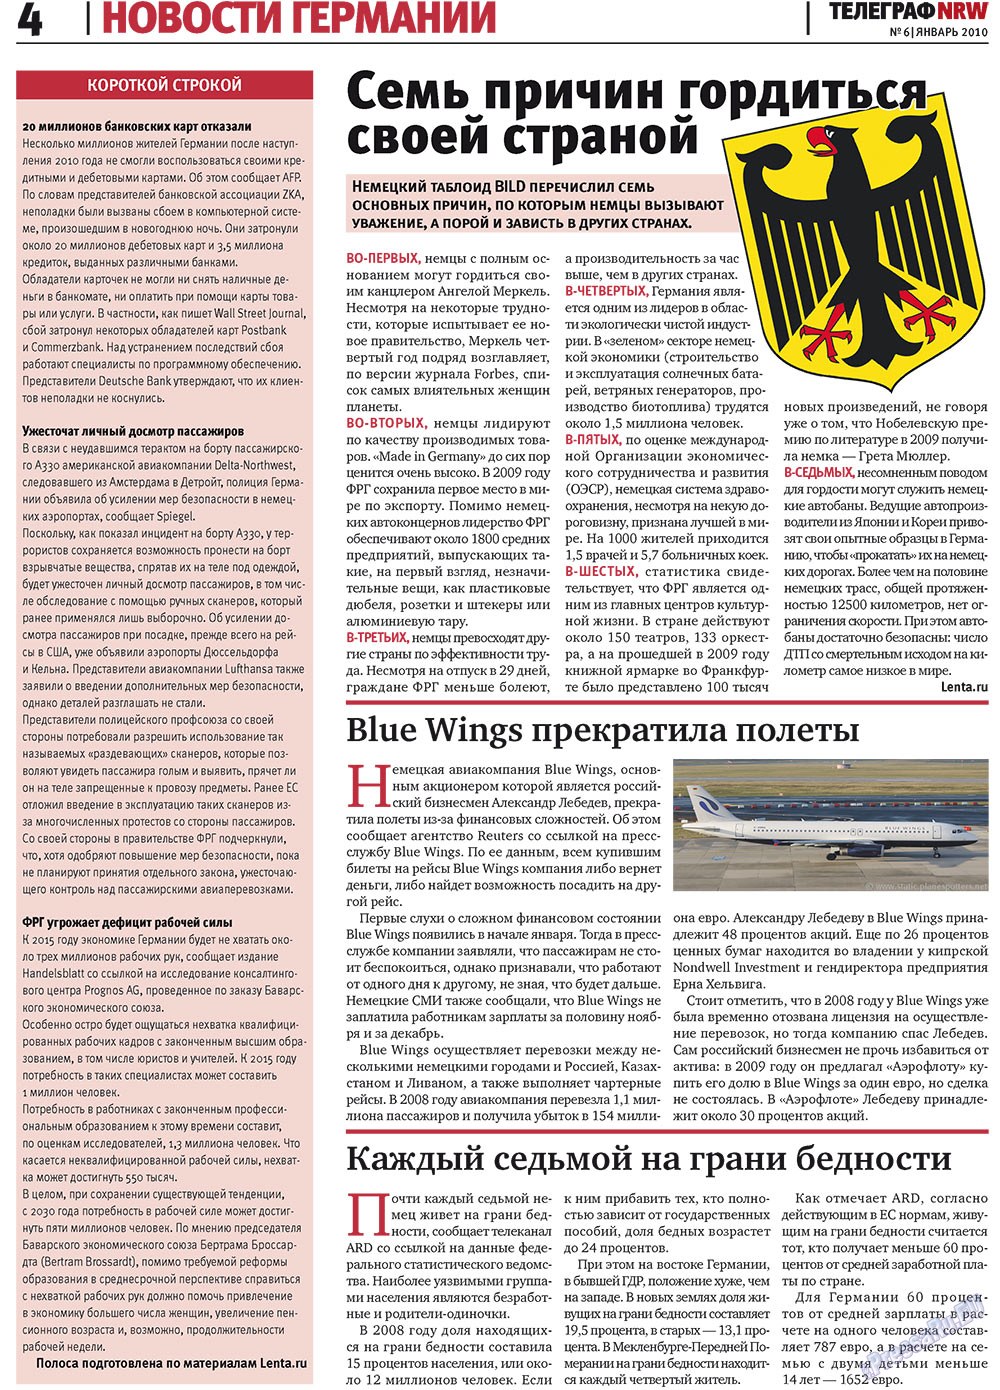 Телеграф NRW (газета). 2010 год, номер 1, стр. 4